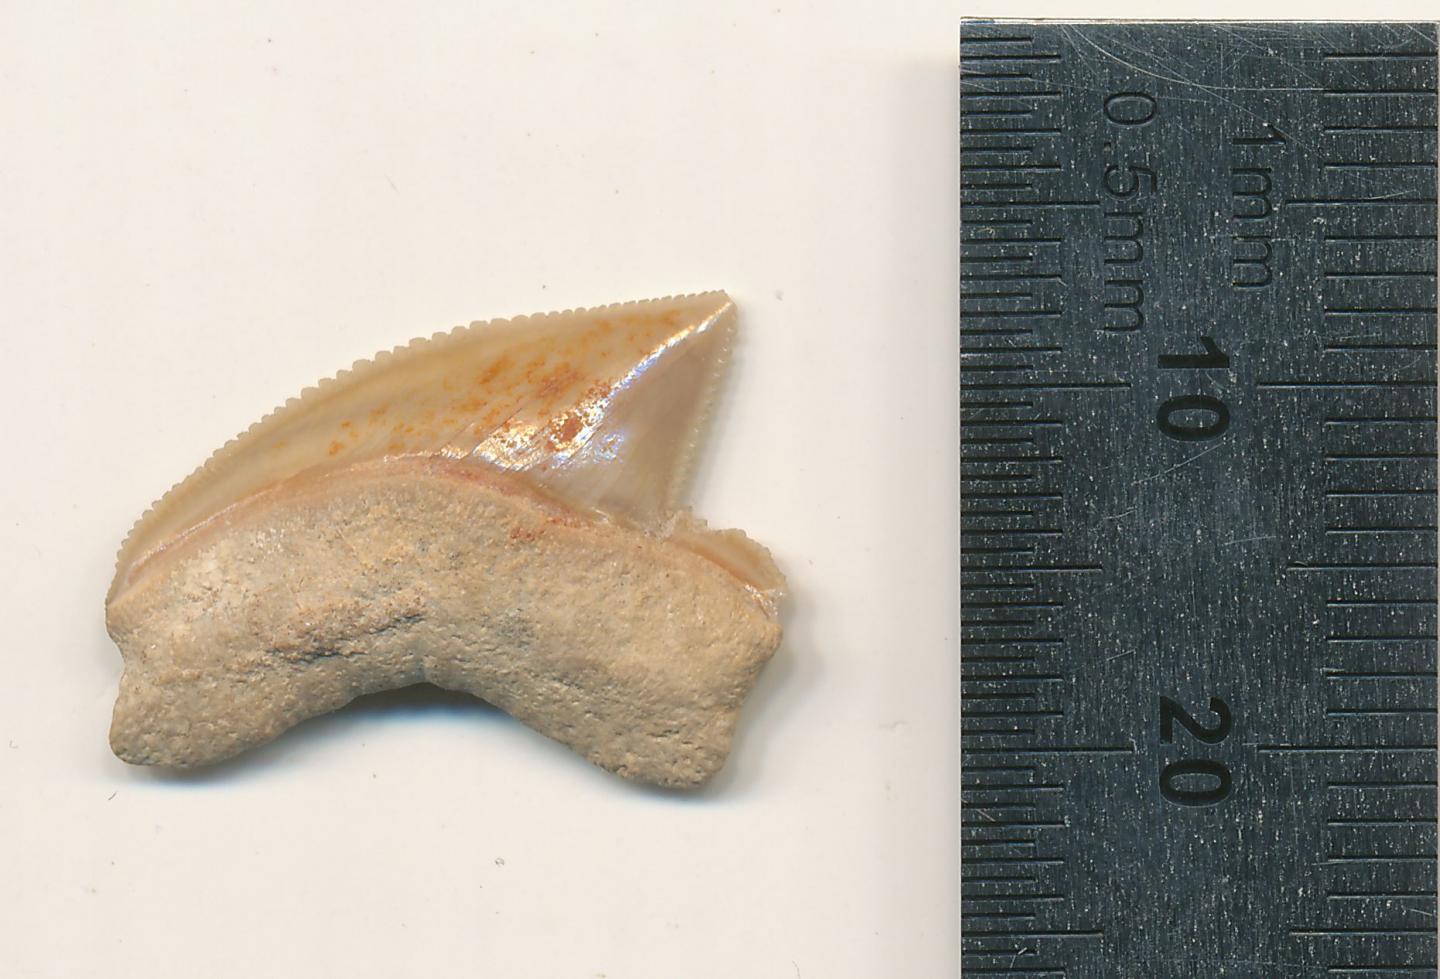 Fossilised shark tooth